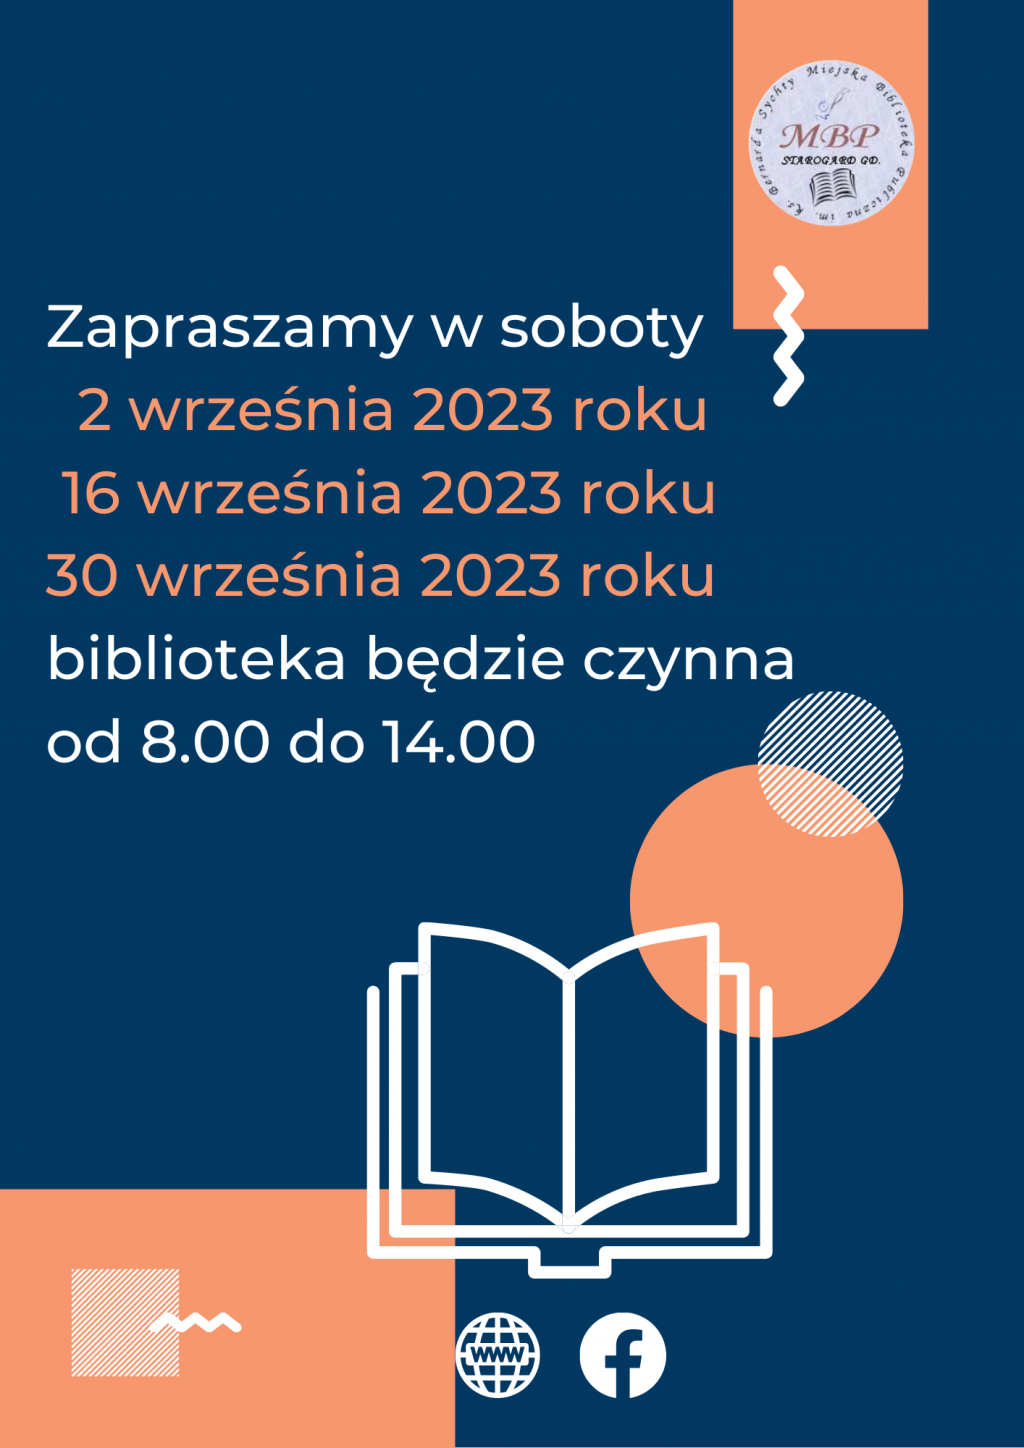 Plakat informujący o pracujących sobotach: 2 września 2023 roku, 16 września 2023 i 30 września 2023 roku, biblioteka będzie czynna od 8.00 do 14.00. Miejska Biblioteka Publiczna w Starogardzie Gdańskim.